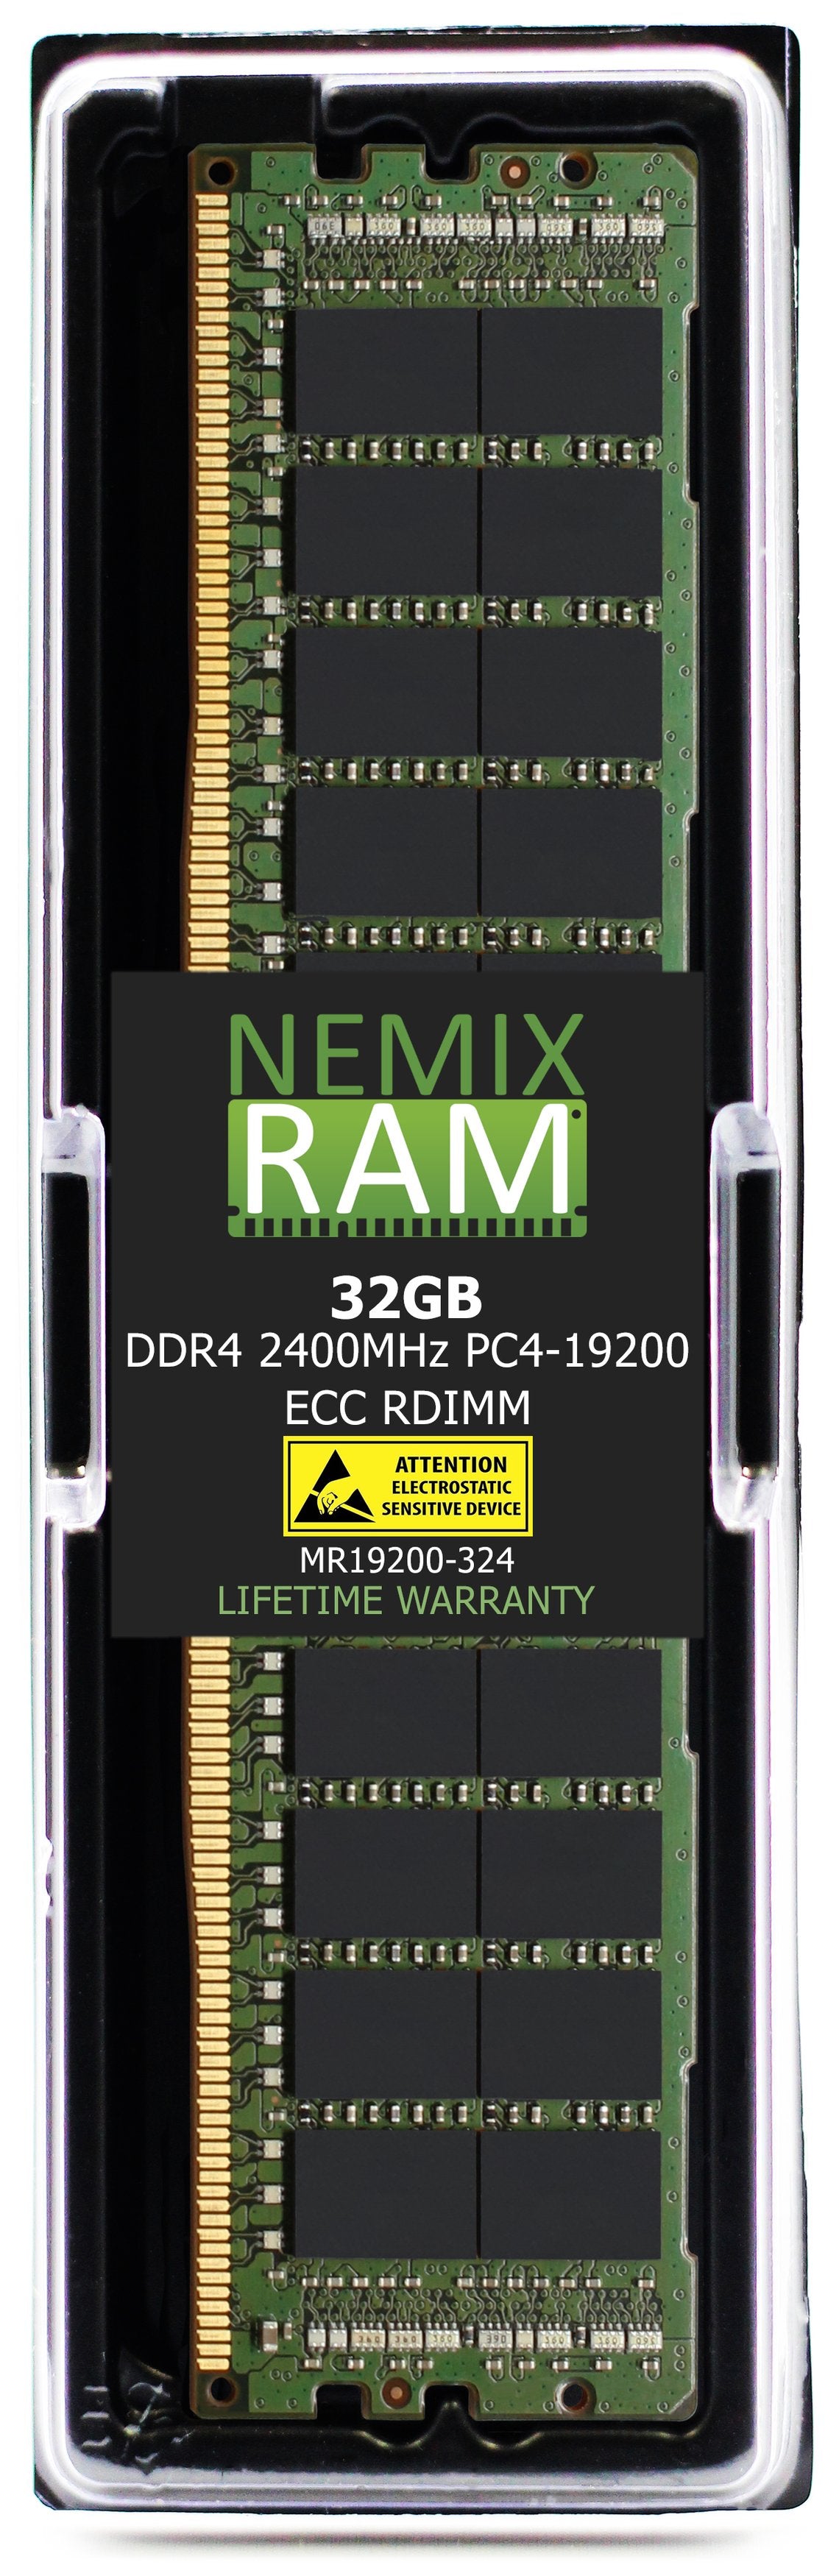 NEC Express5800 R120g Memory Module N8102-689F 32GB DDR4 2400MHZ PC4-19200 RDIMM